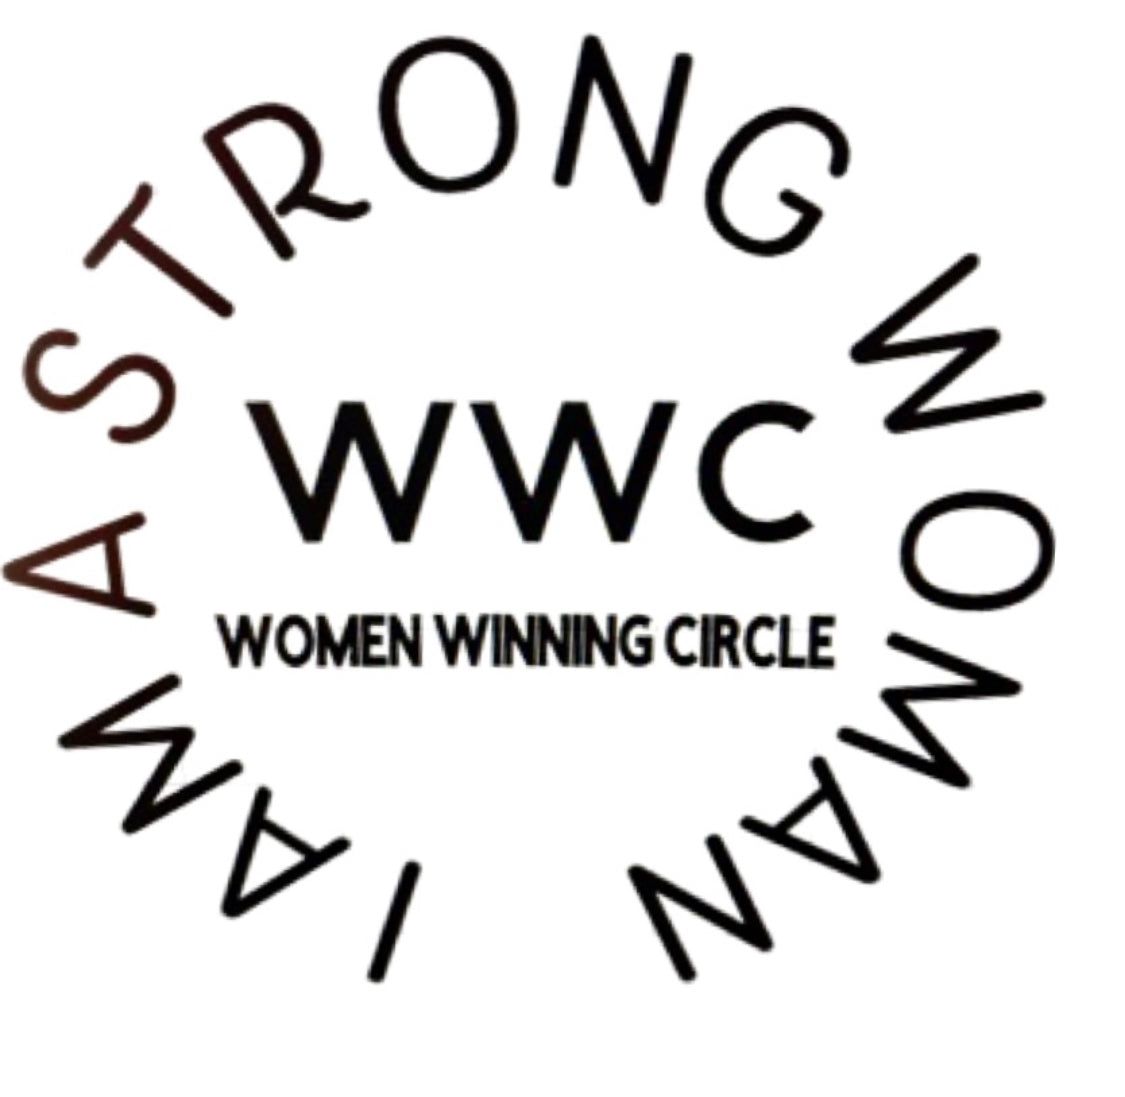 WOMEN WINNING CIRCLE COMMUNITY